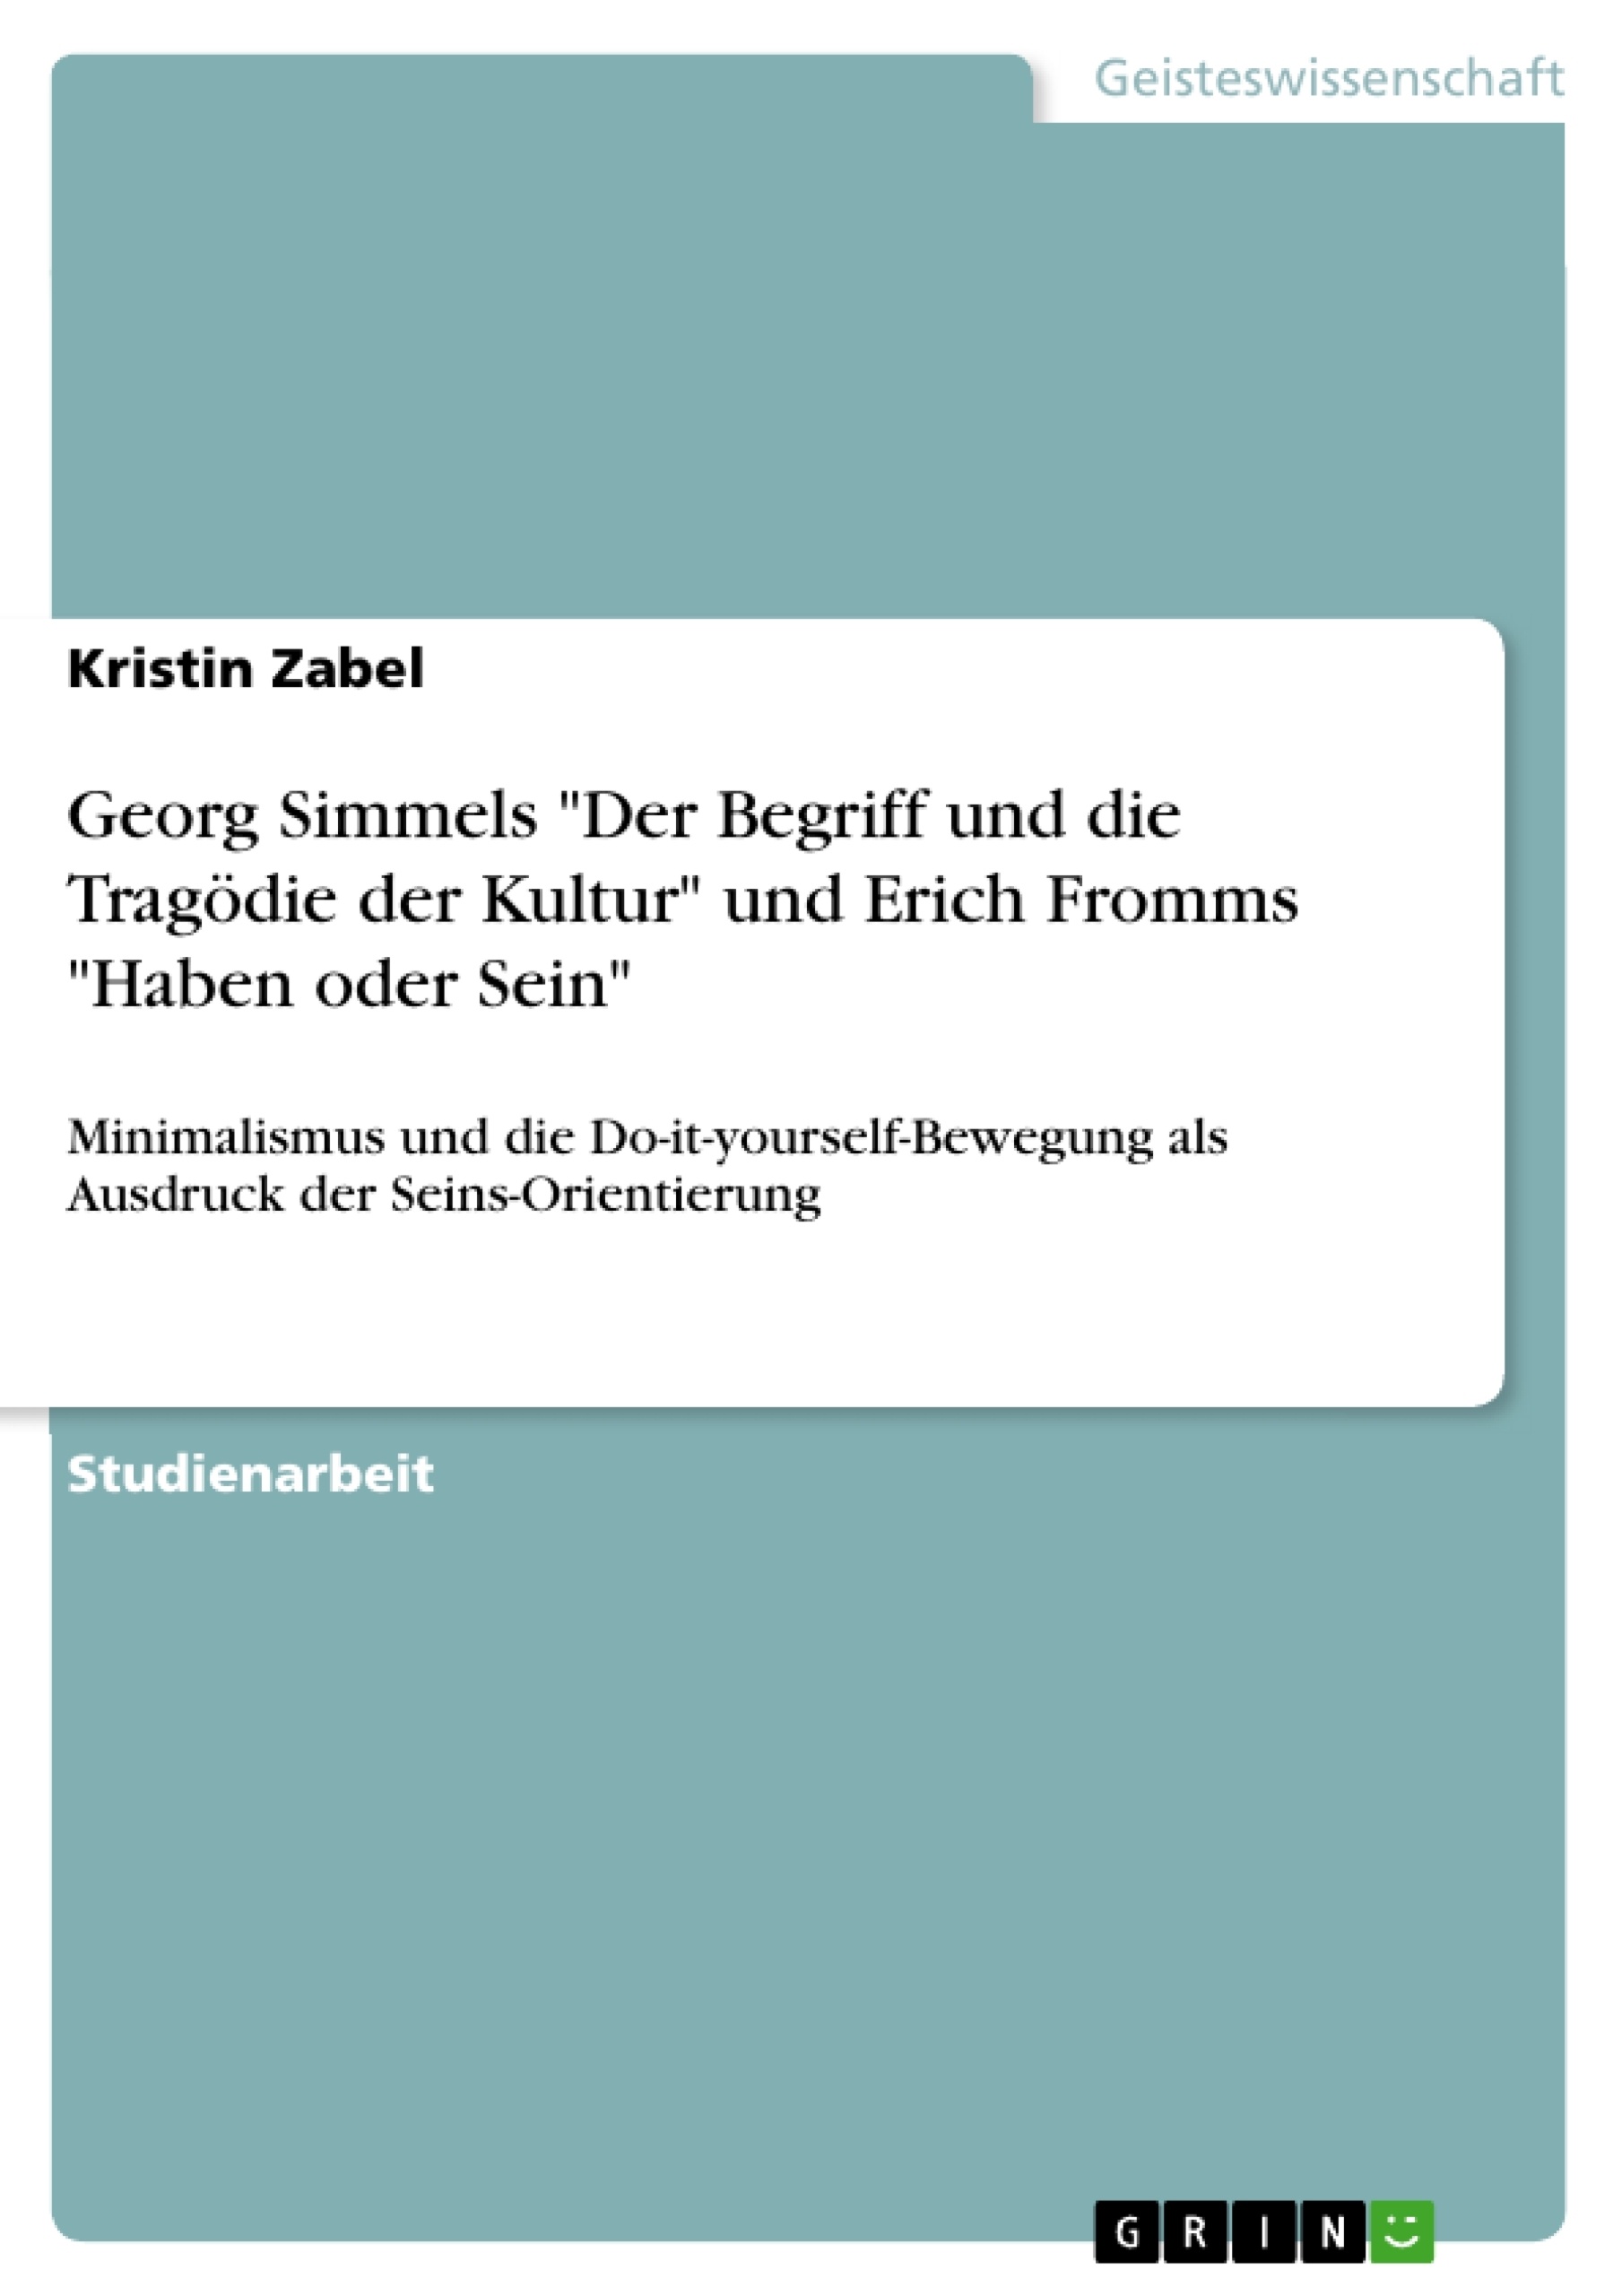 Titre: Georg Simmels "Der Begriff und die Tragödie der Kultur" und Erich Fromms "Haben oder Sein"